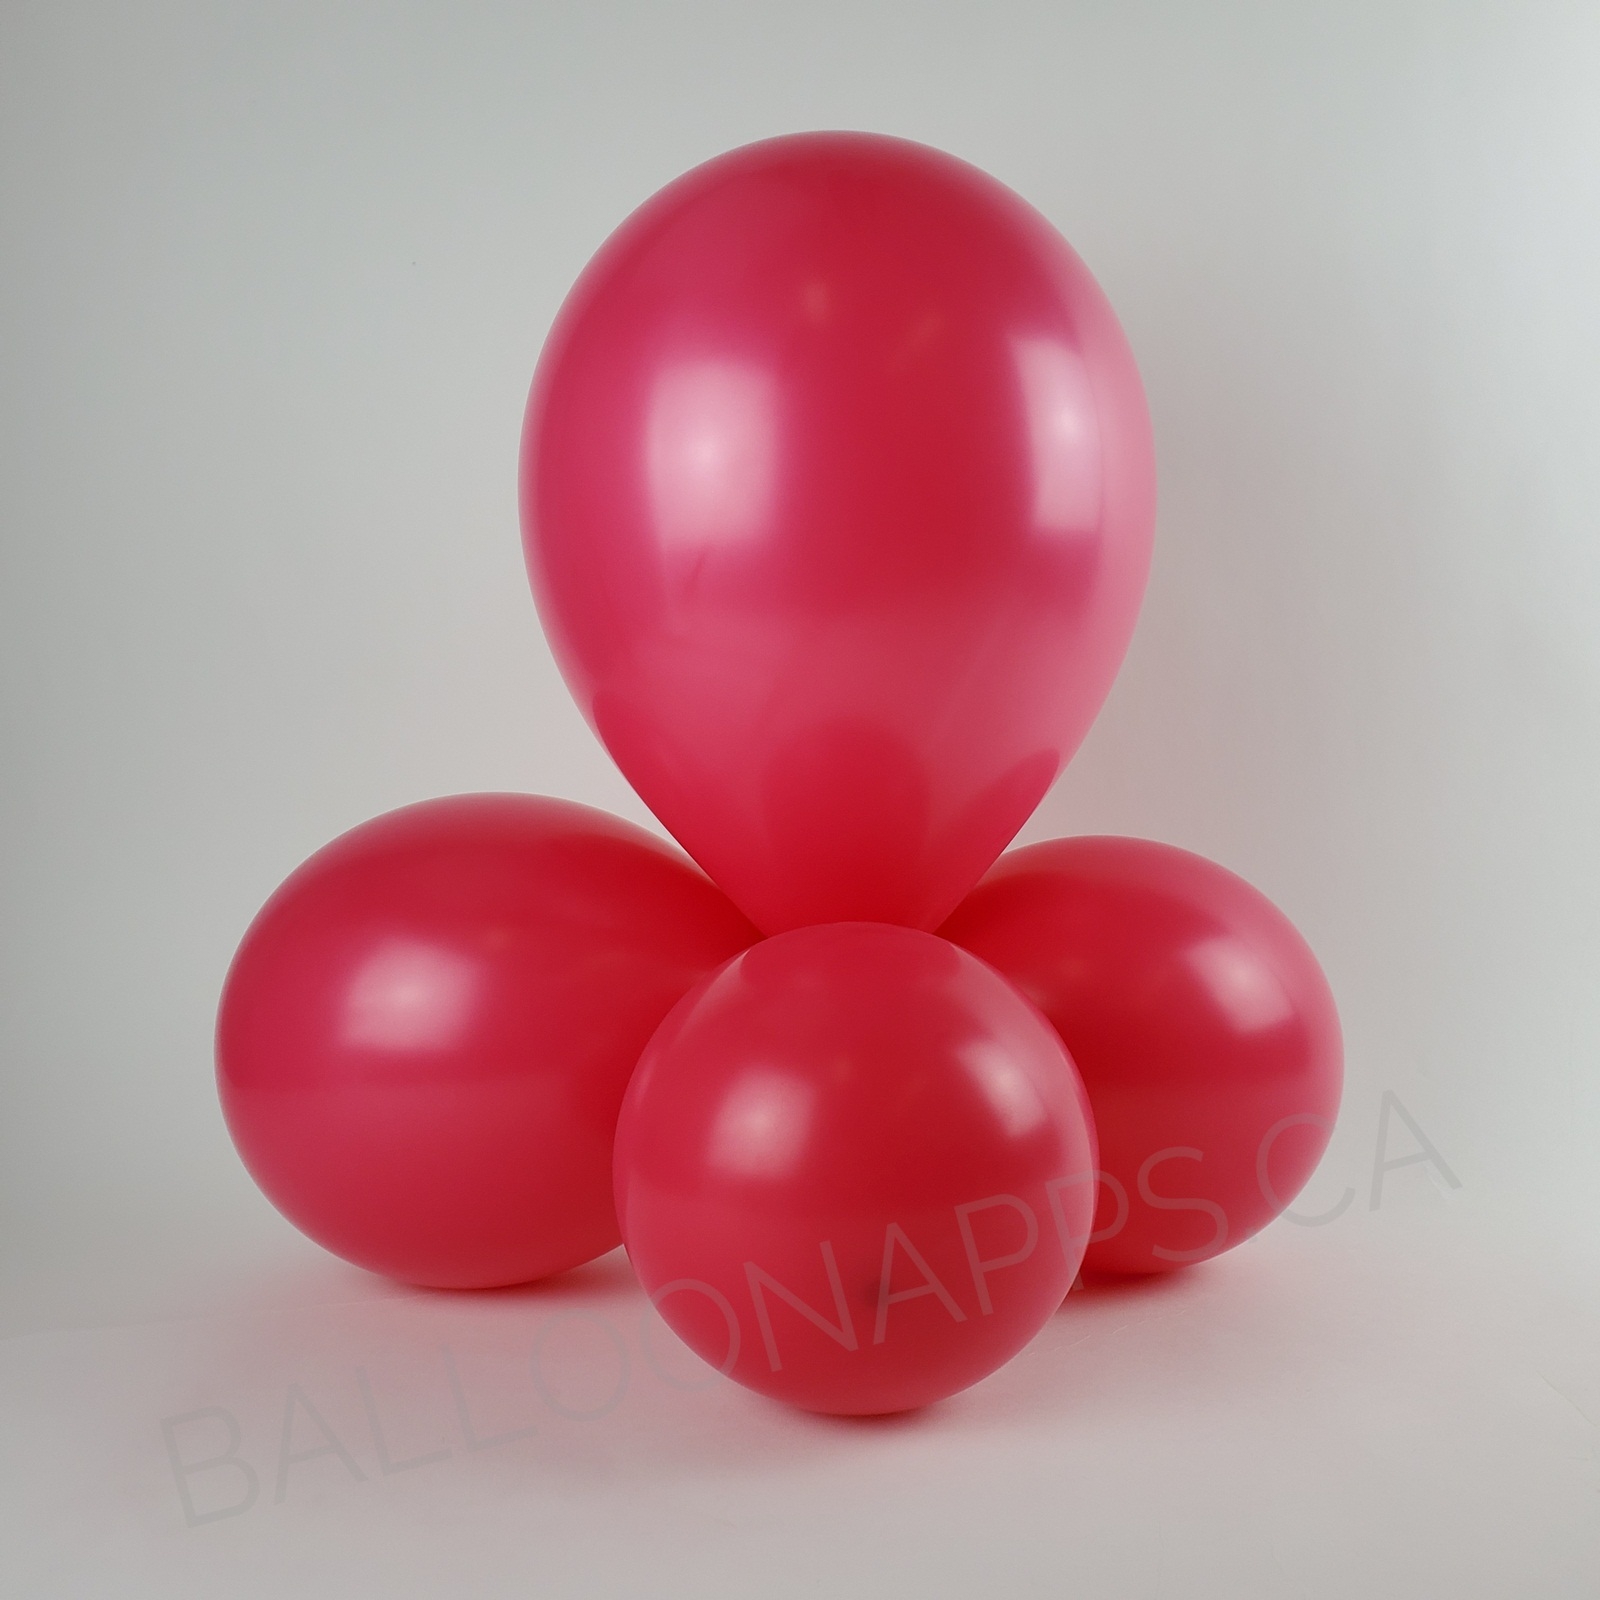 balloon texture Q (100) 260 Fashion Wild Berry balloons